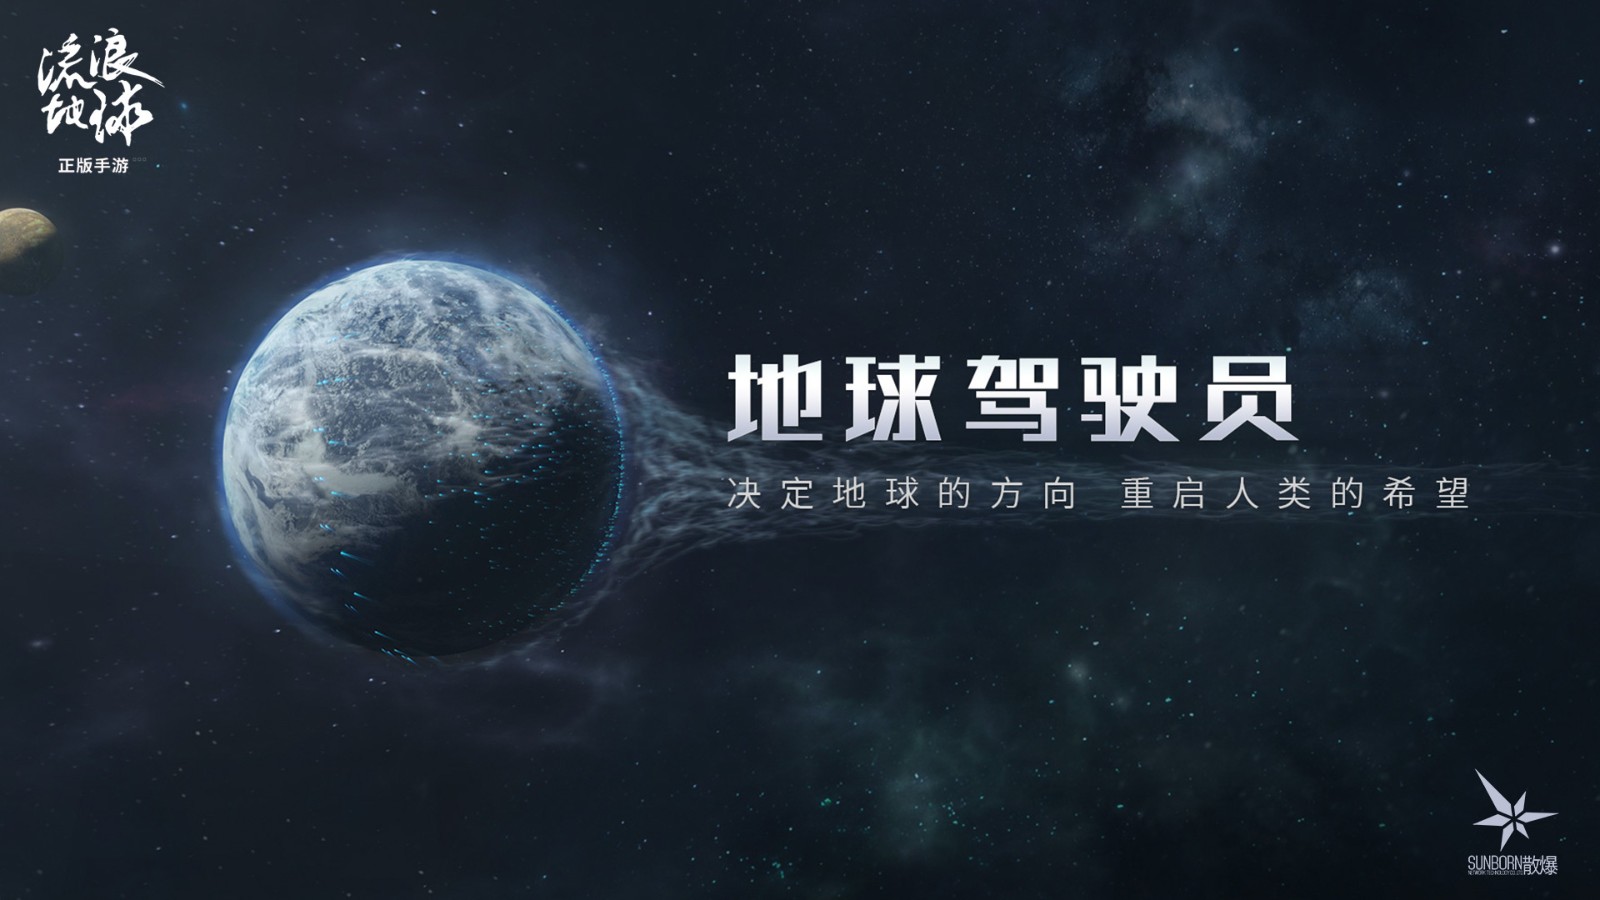 中式硬核科幻策略手游 《流浪地球手游》正式公布 官网预约开启